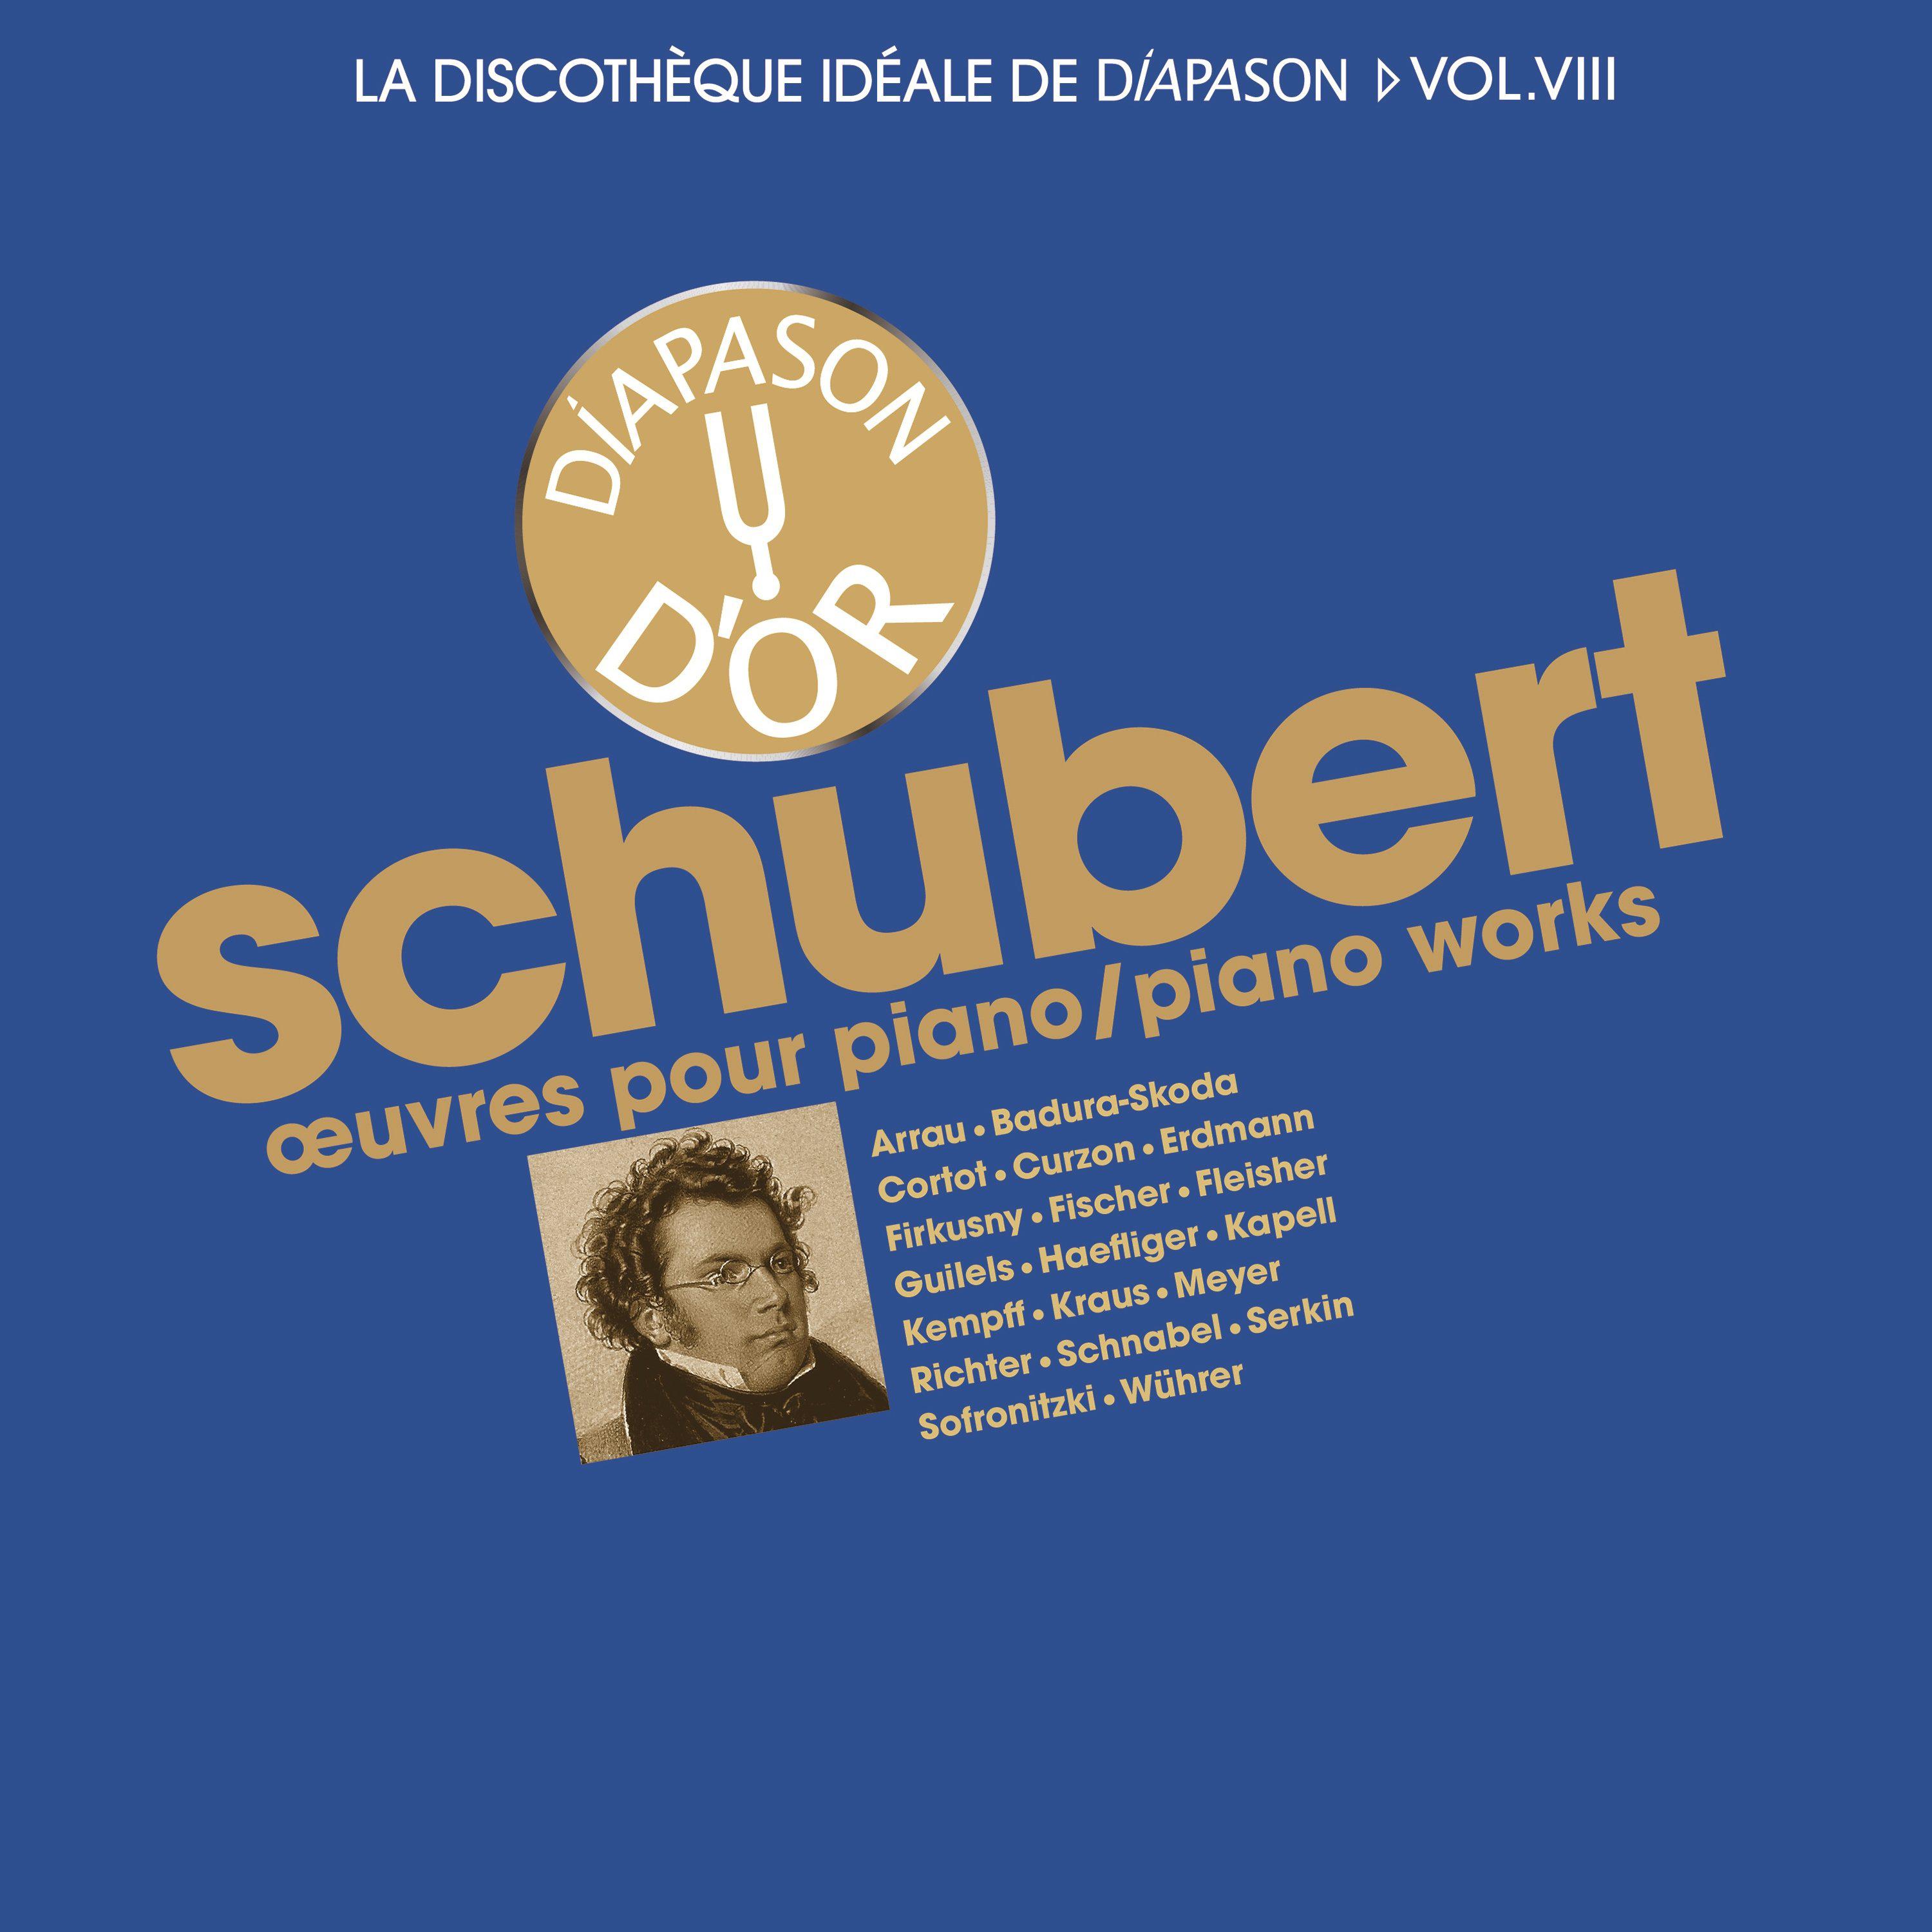 Schubert: Oeuvres pour piano  La discothe que ide ale de Diapason, Vol. 8